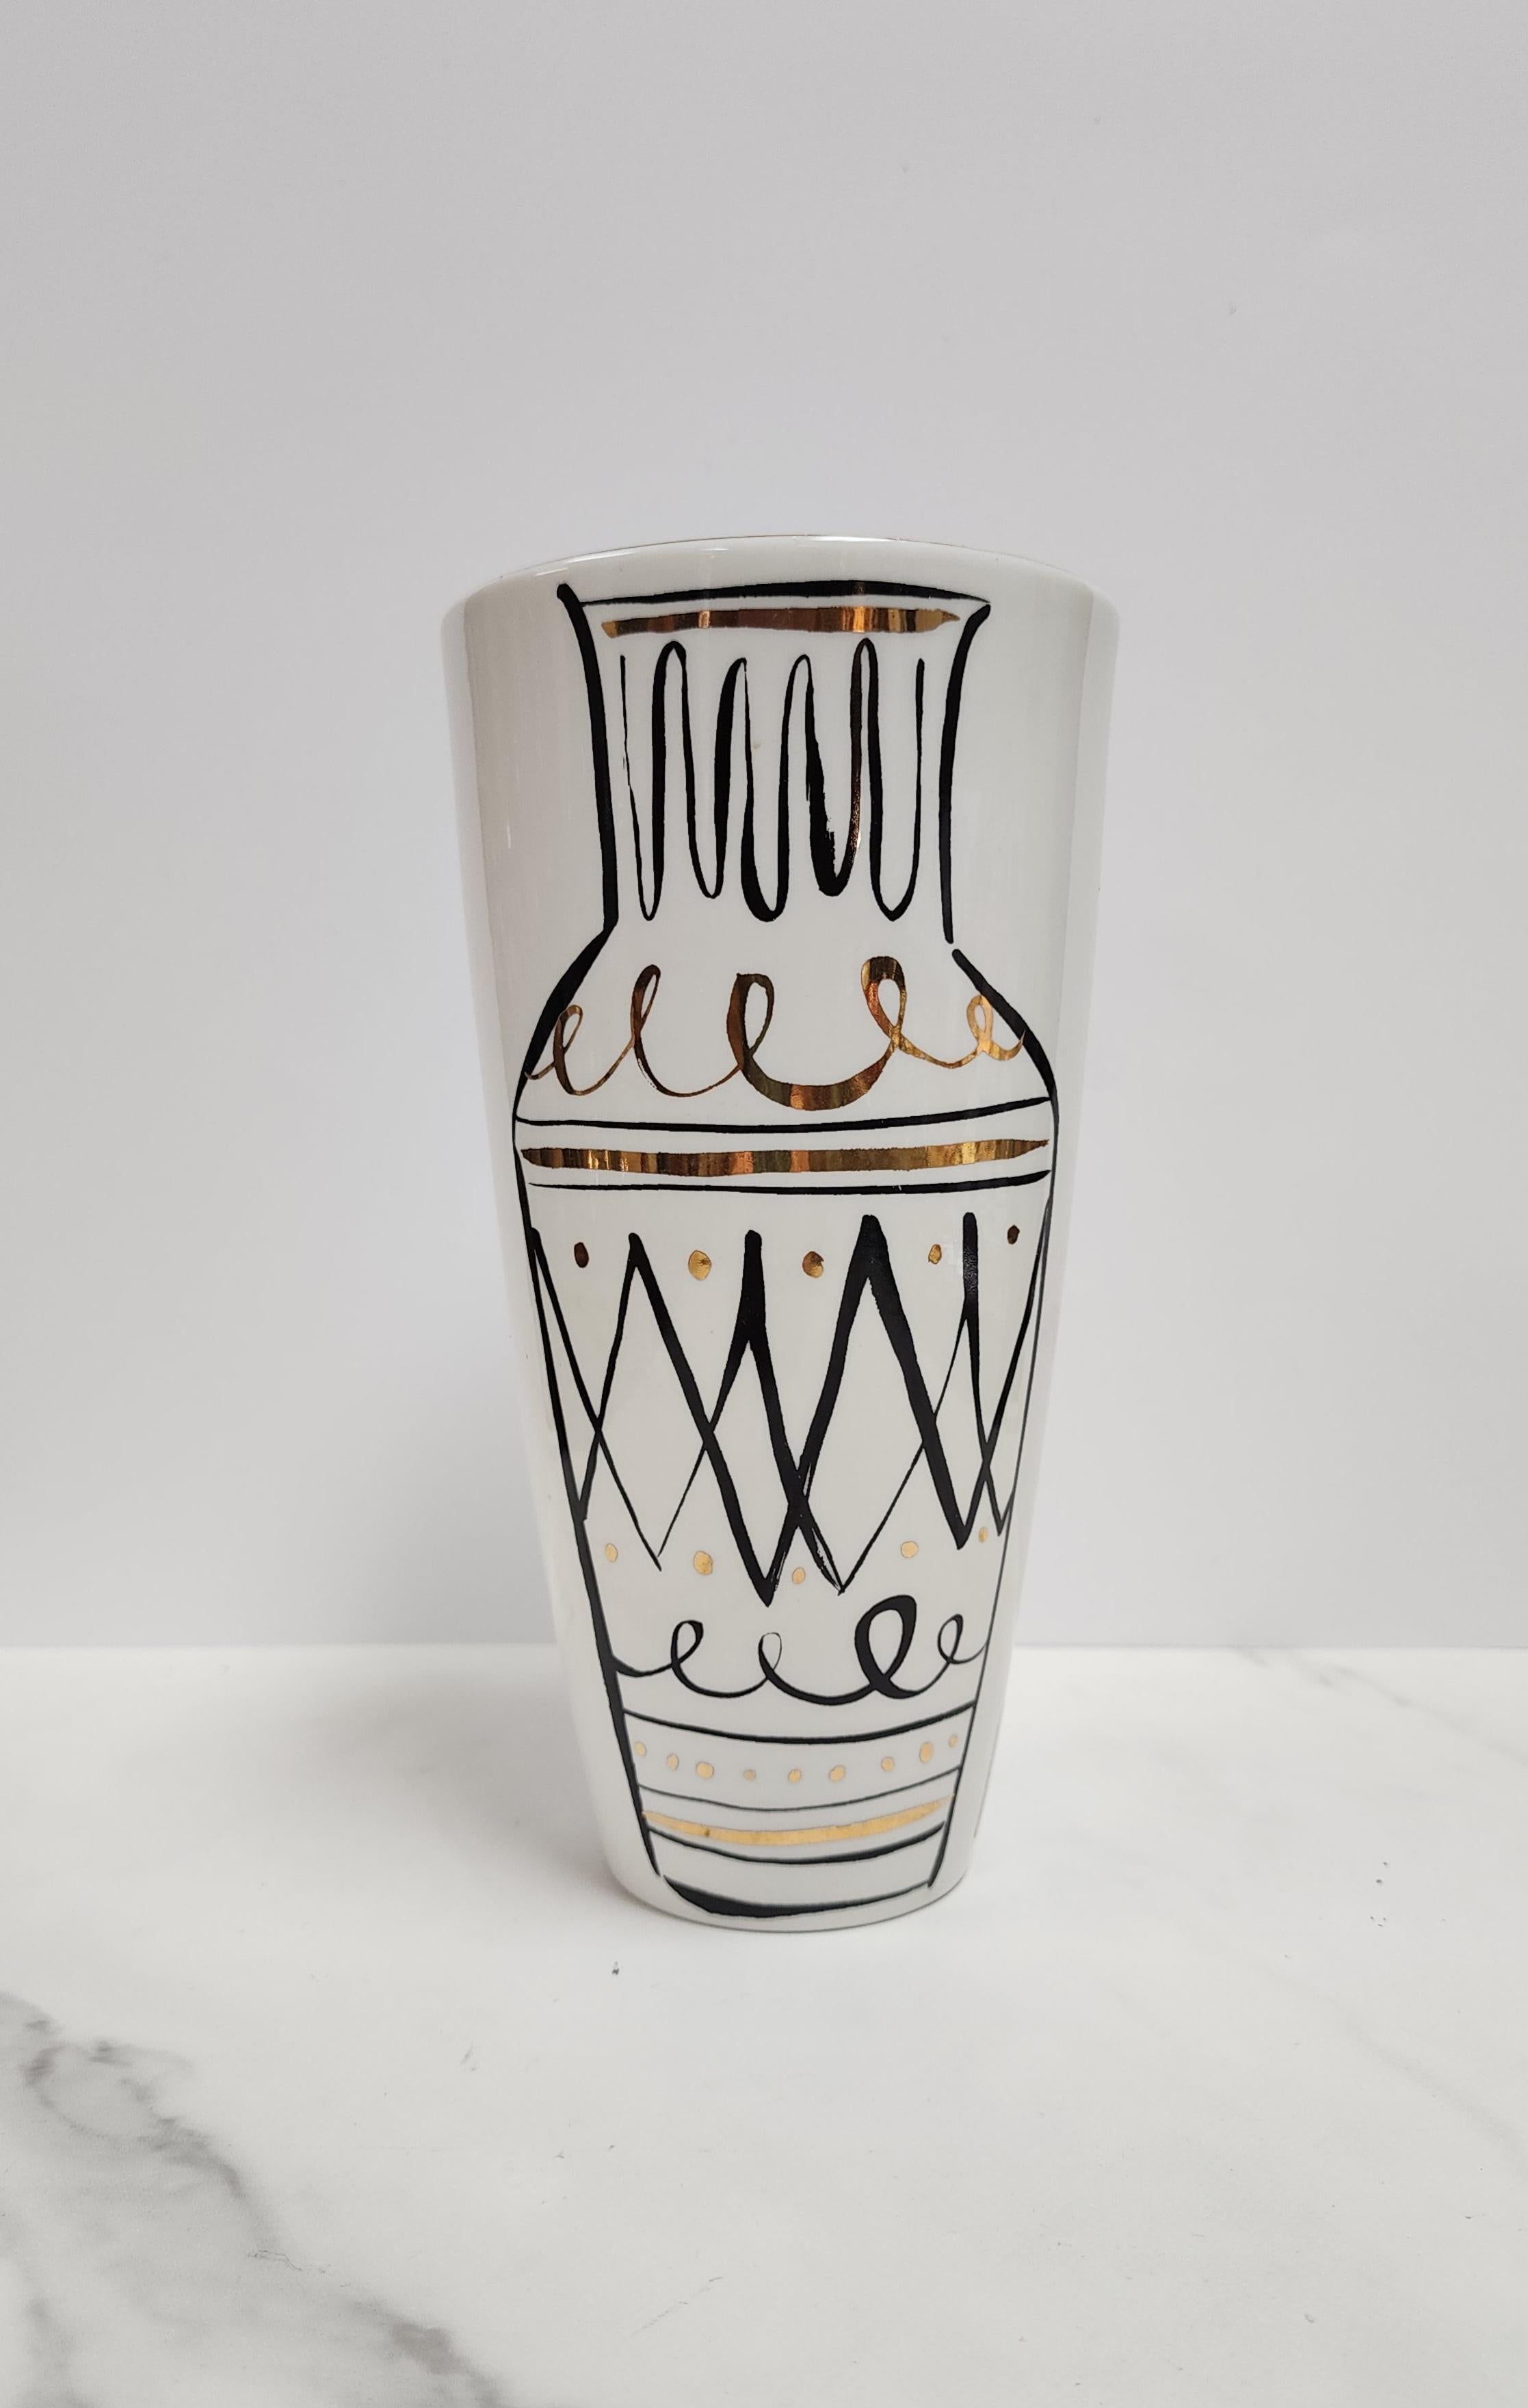 Ce vase Lenox ivoire et or est issu de la Collaboration avec Kate Spade marquée Daisy Place Kate Spade New York. L'art du style scrafitto d'un vase dans un vase est fantaisiste et fait un clin d'œil à la poterie italienne classique. En parfait état. 